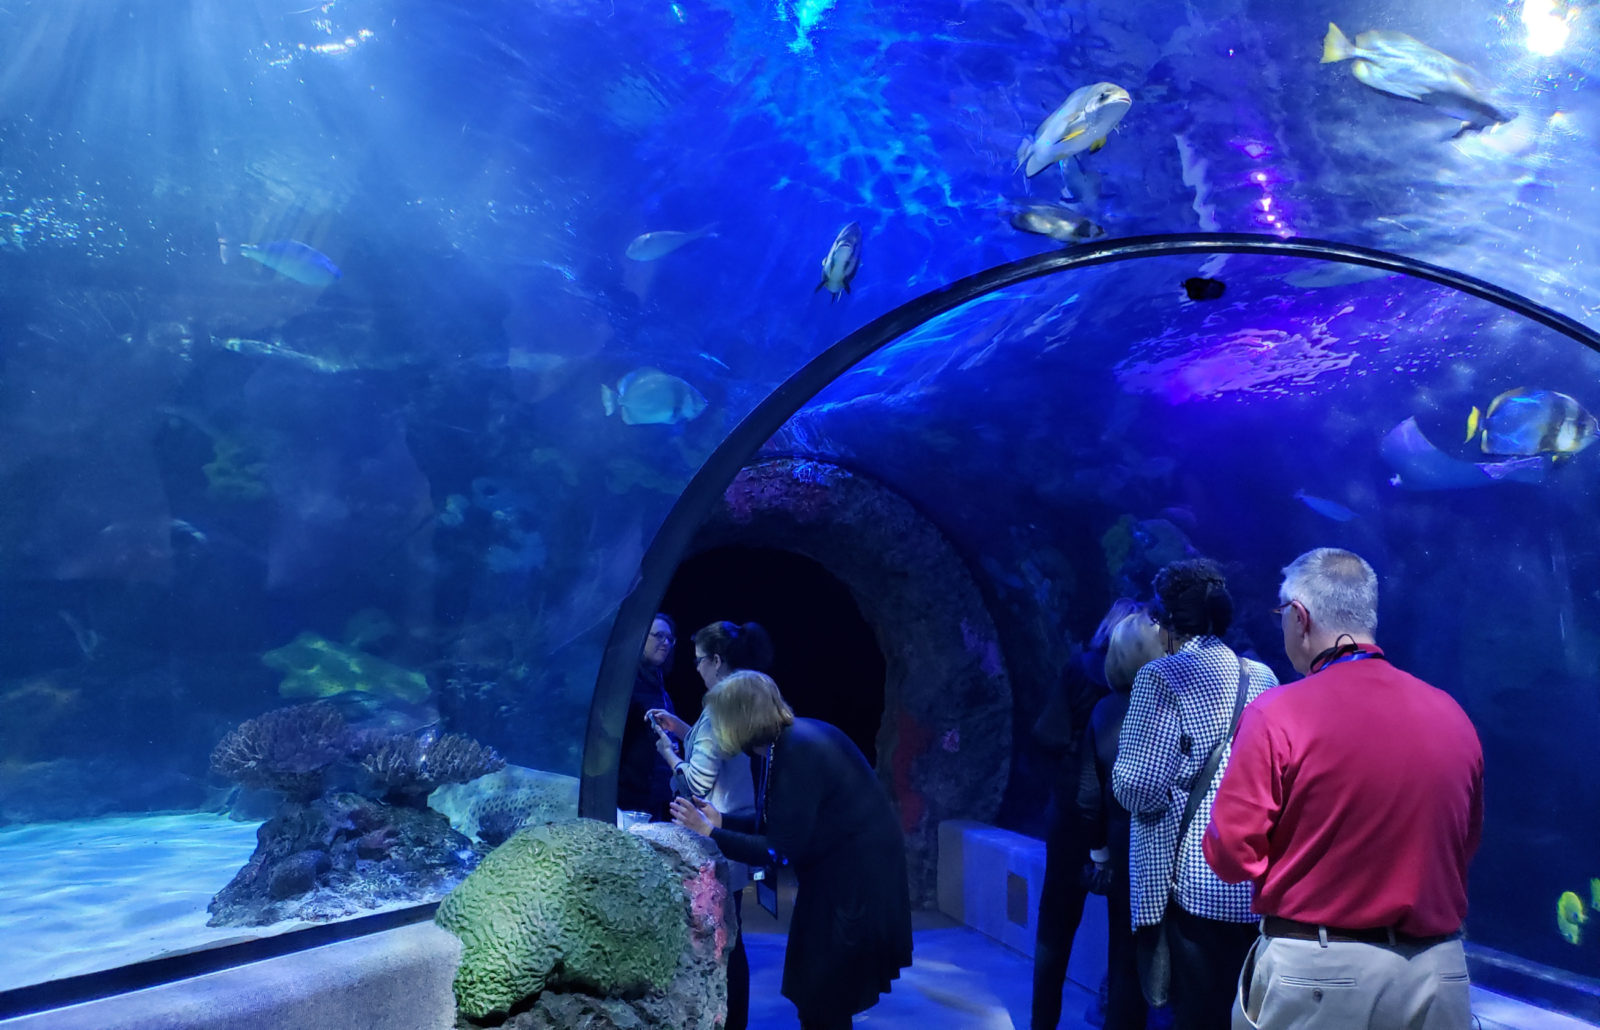 Aquarium tunnel through tank